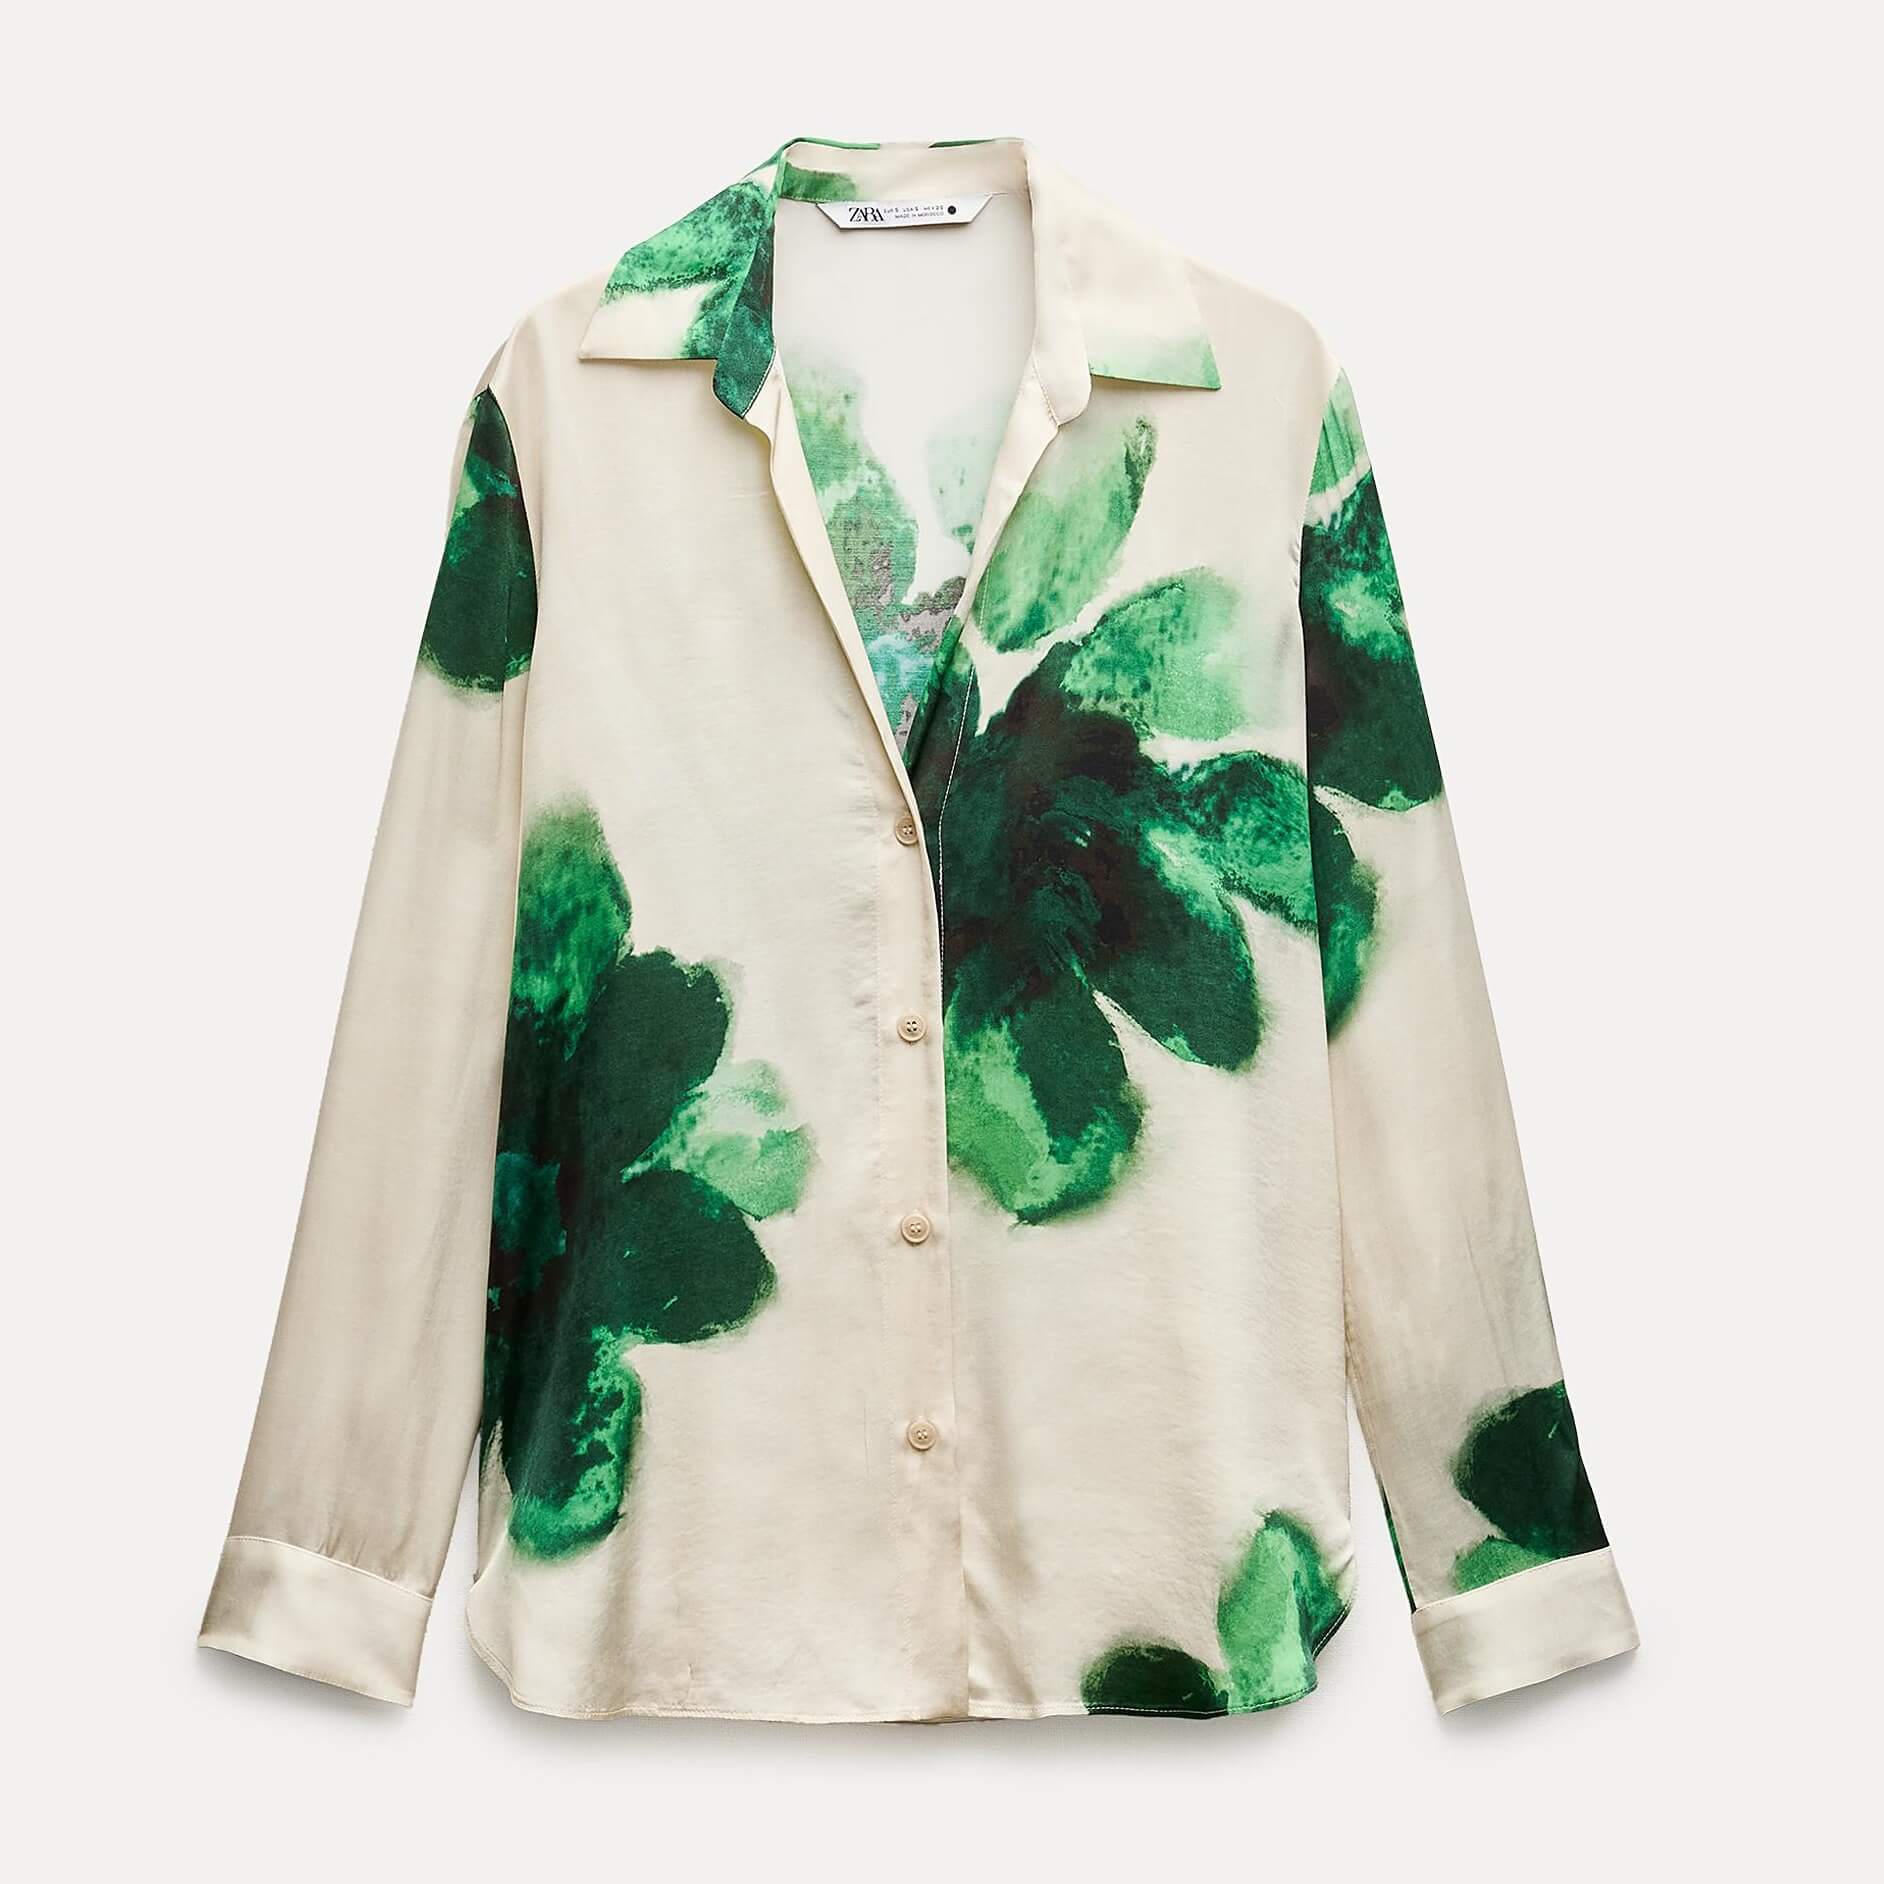 Рубашка Zara ZW Collection Flowing Printed, бежевый/зеленый рубашка zara flowing printed разноцветный